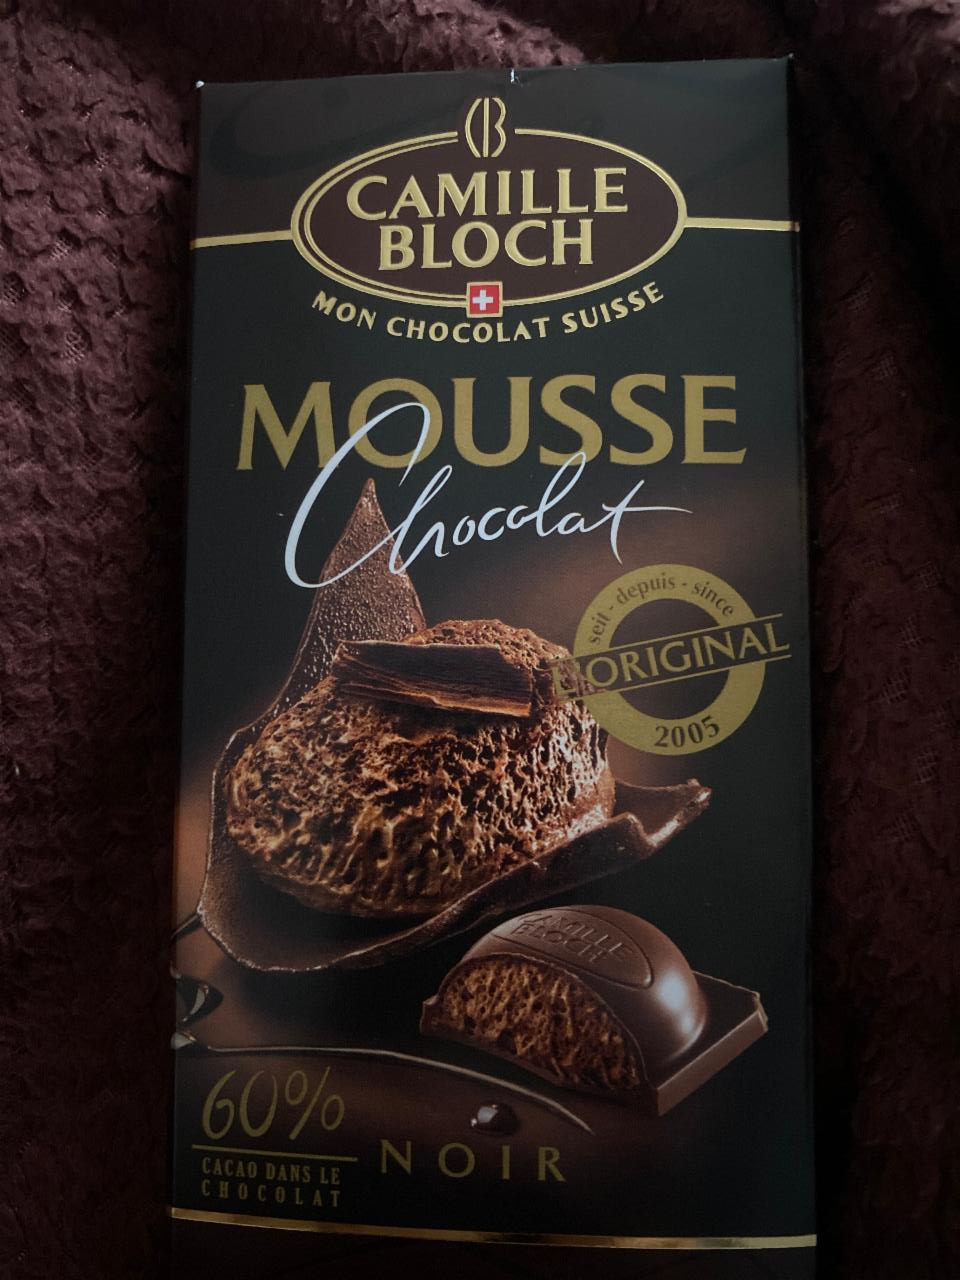 Фото - Mousse Chocolat Noir 60% Camille Bloch